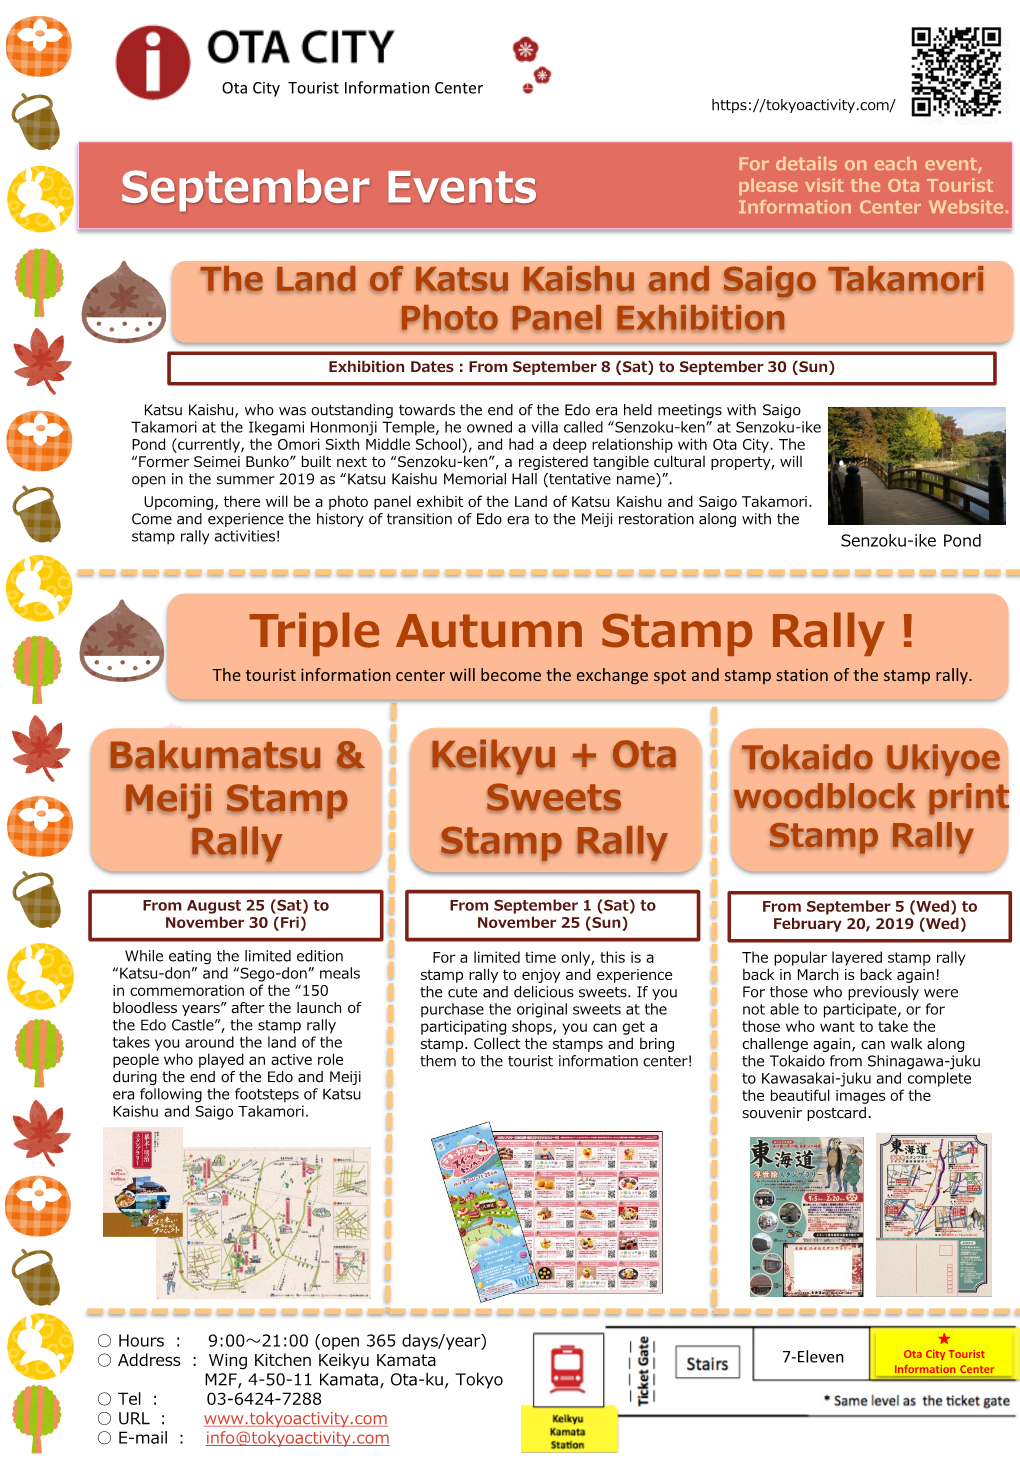 Bakumatsu & Meiji Stamp Rally